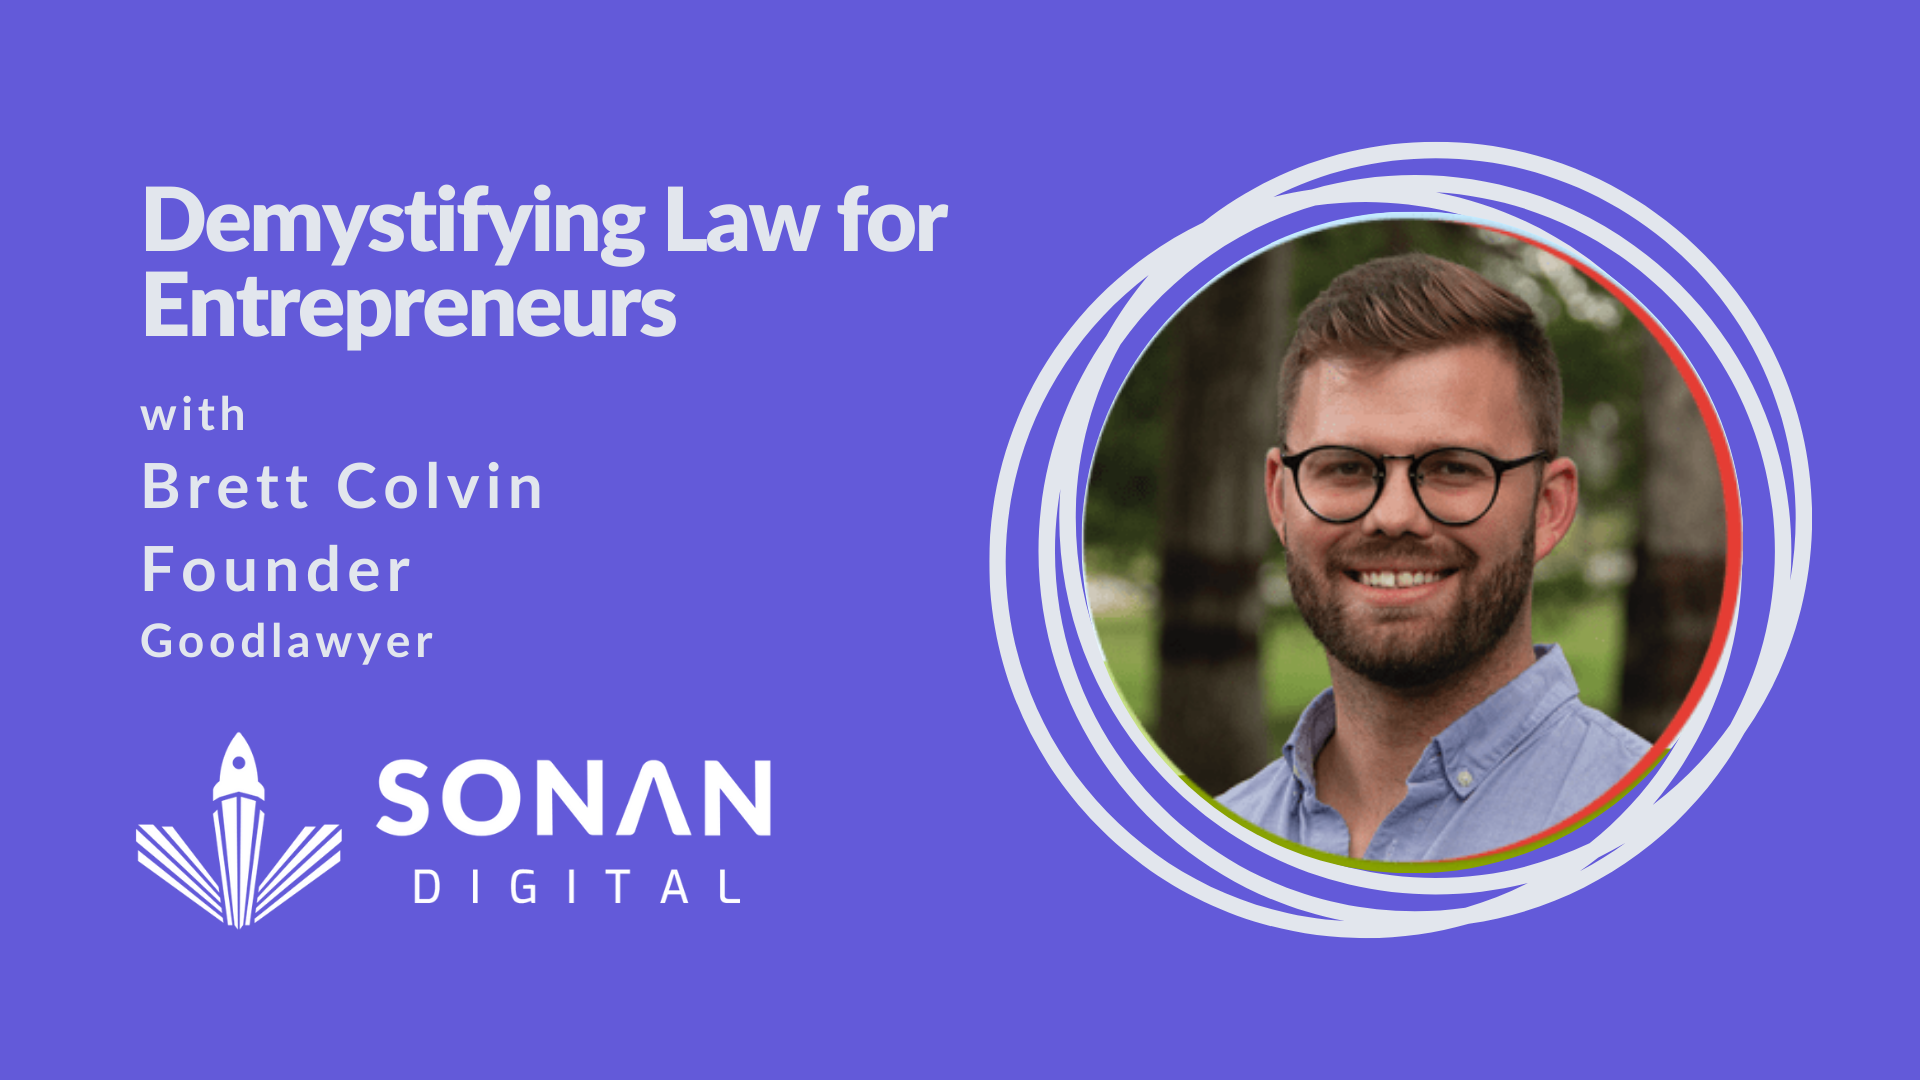 Goodlawyer’s Brett Colvin on Demystifying Law for Entrepreneurs